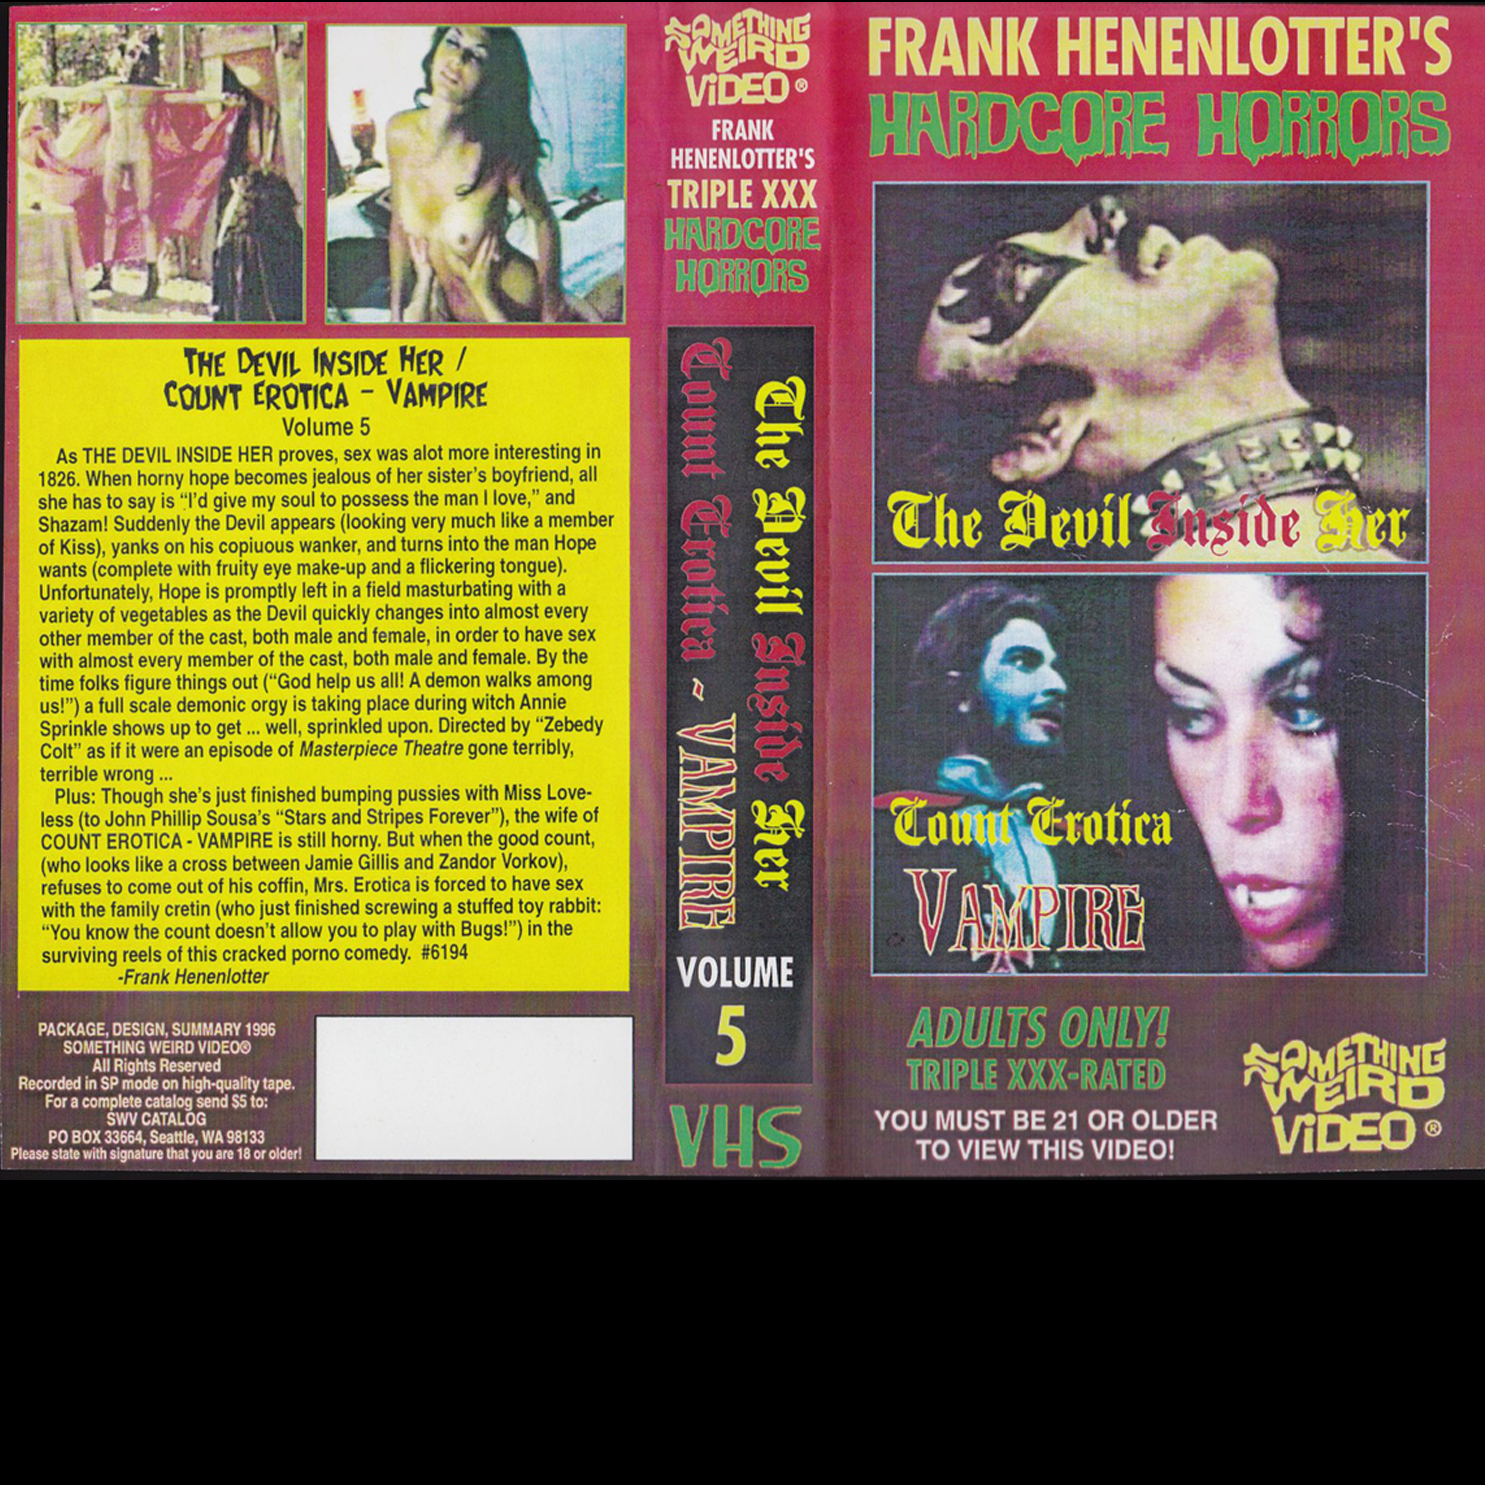 Vampiric Horror VHS